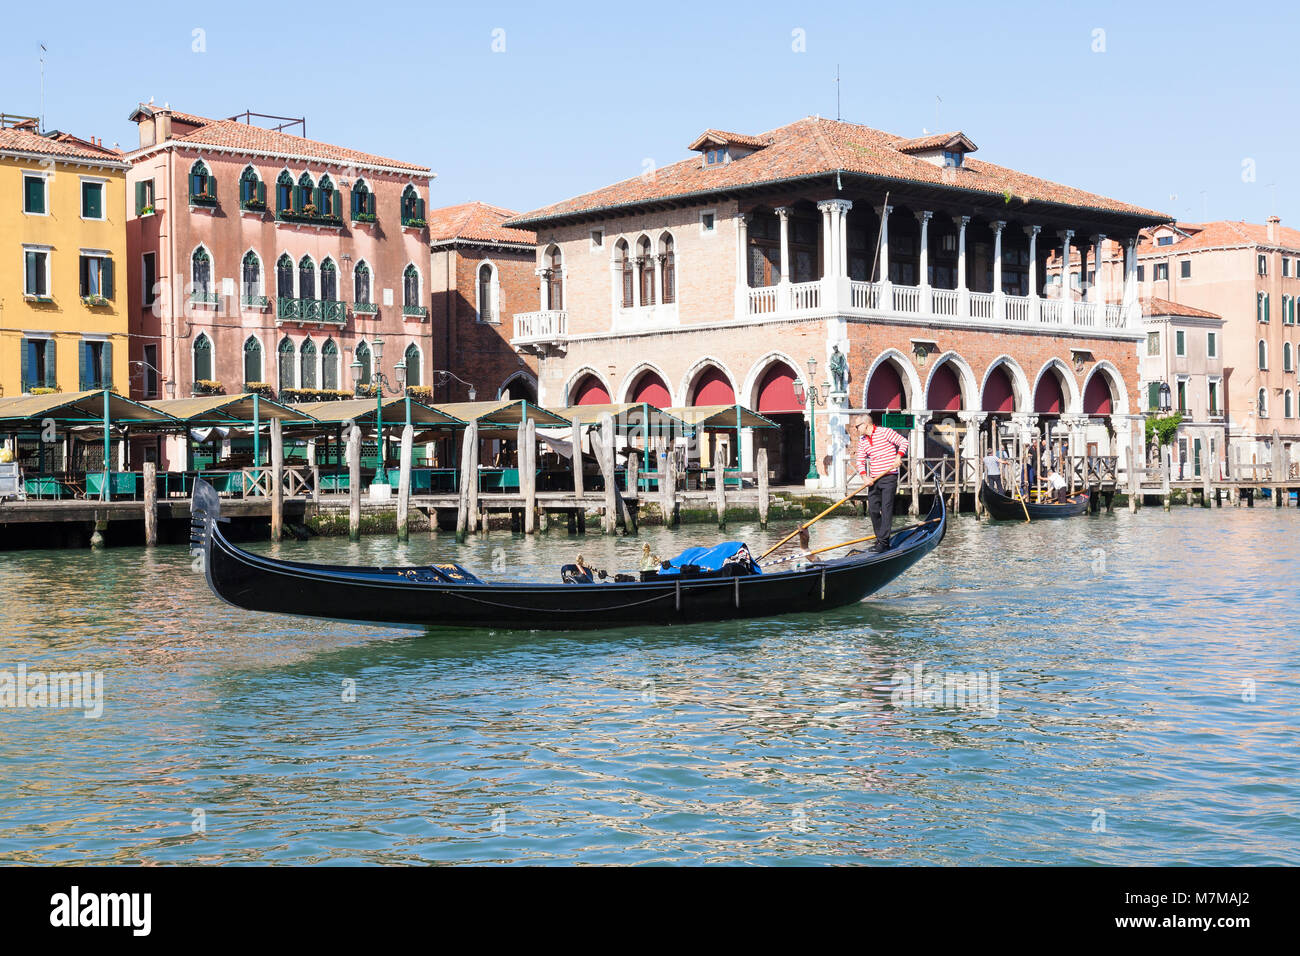 Gondoliere Rudern eine leere Gondel Vergangenheit der Rialto Markt, Grand Canal, San Polo, Veneto, Venedig, Italien in den Morgen, da holt er sein Boot zu starten Stockfoto